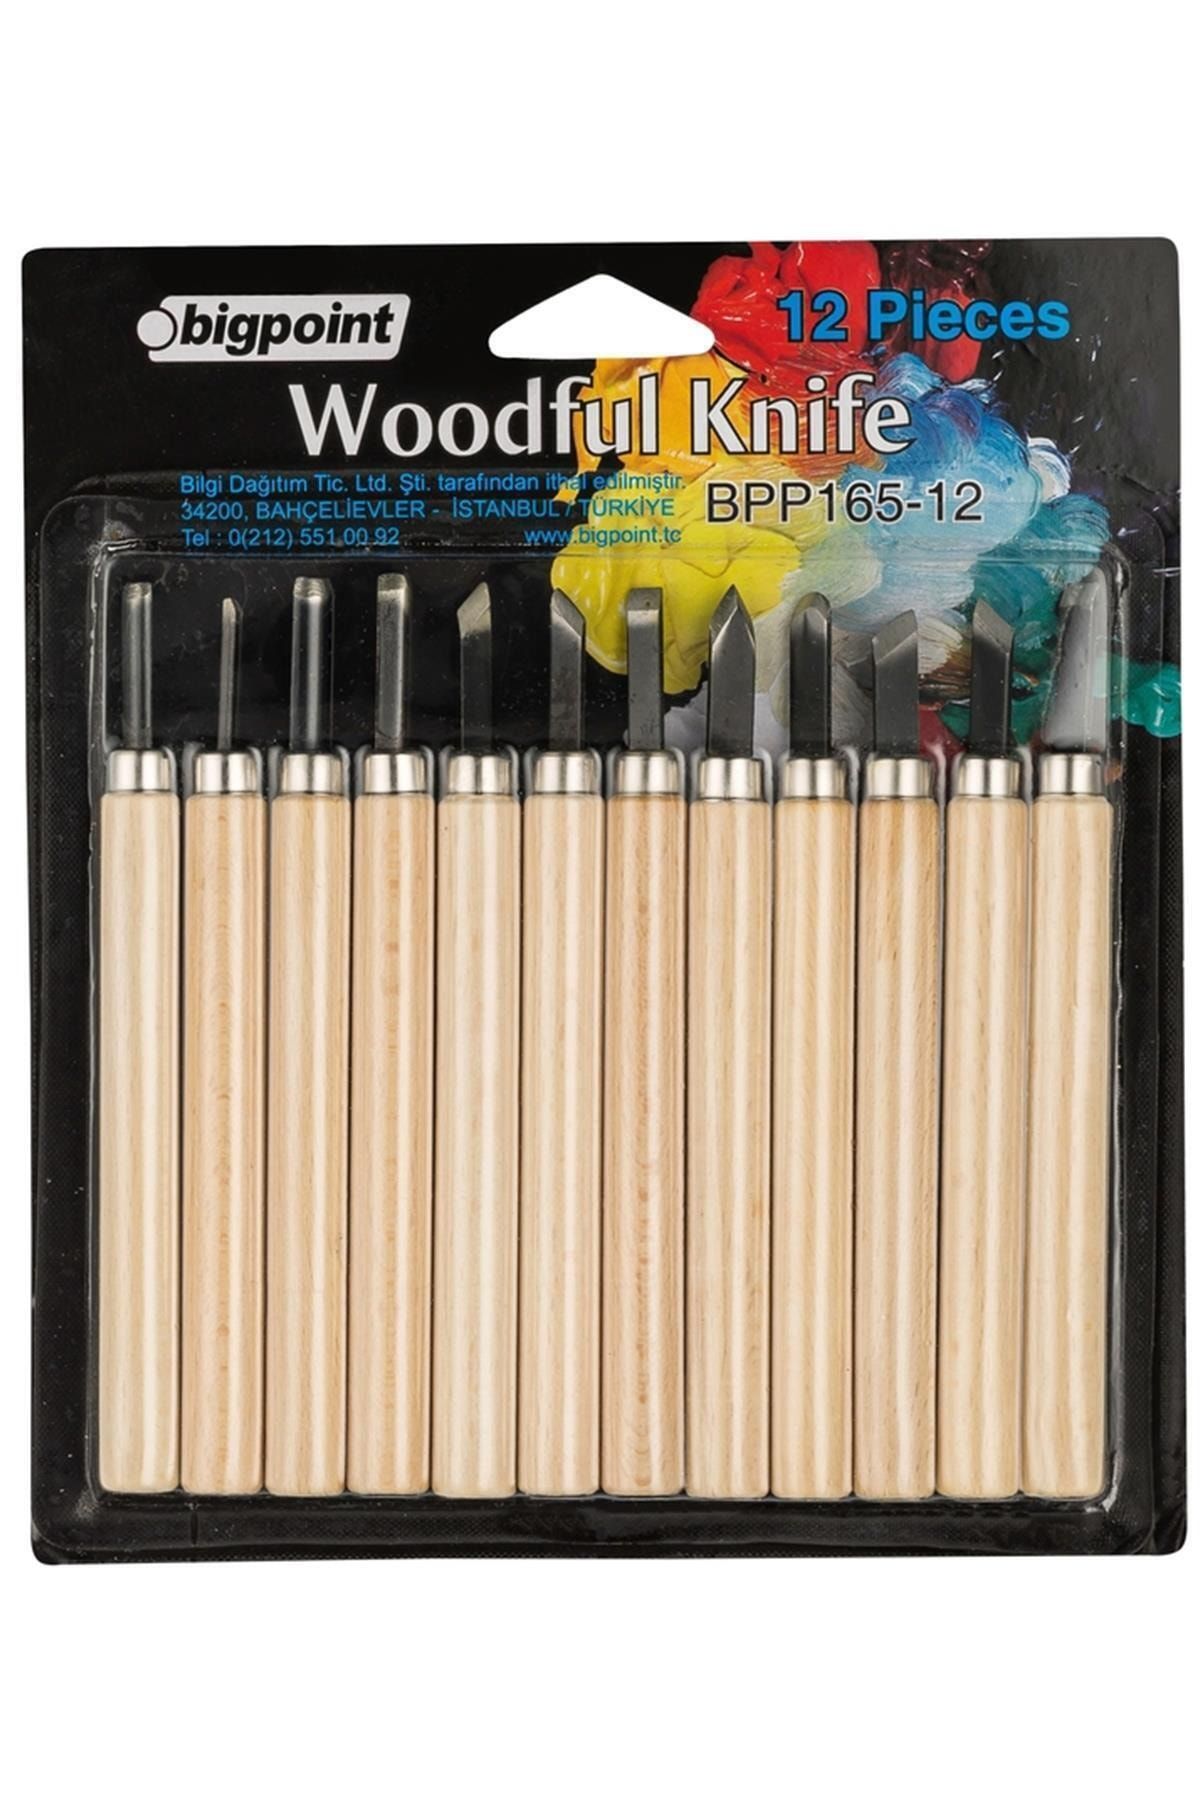 Bigpoint Ahşap Oyma 12'li Set (Woodful/graver Knife)